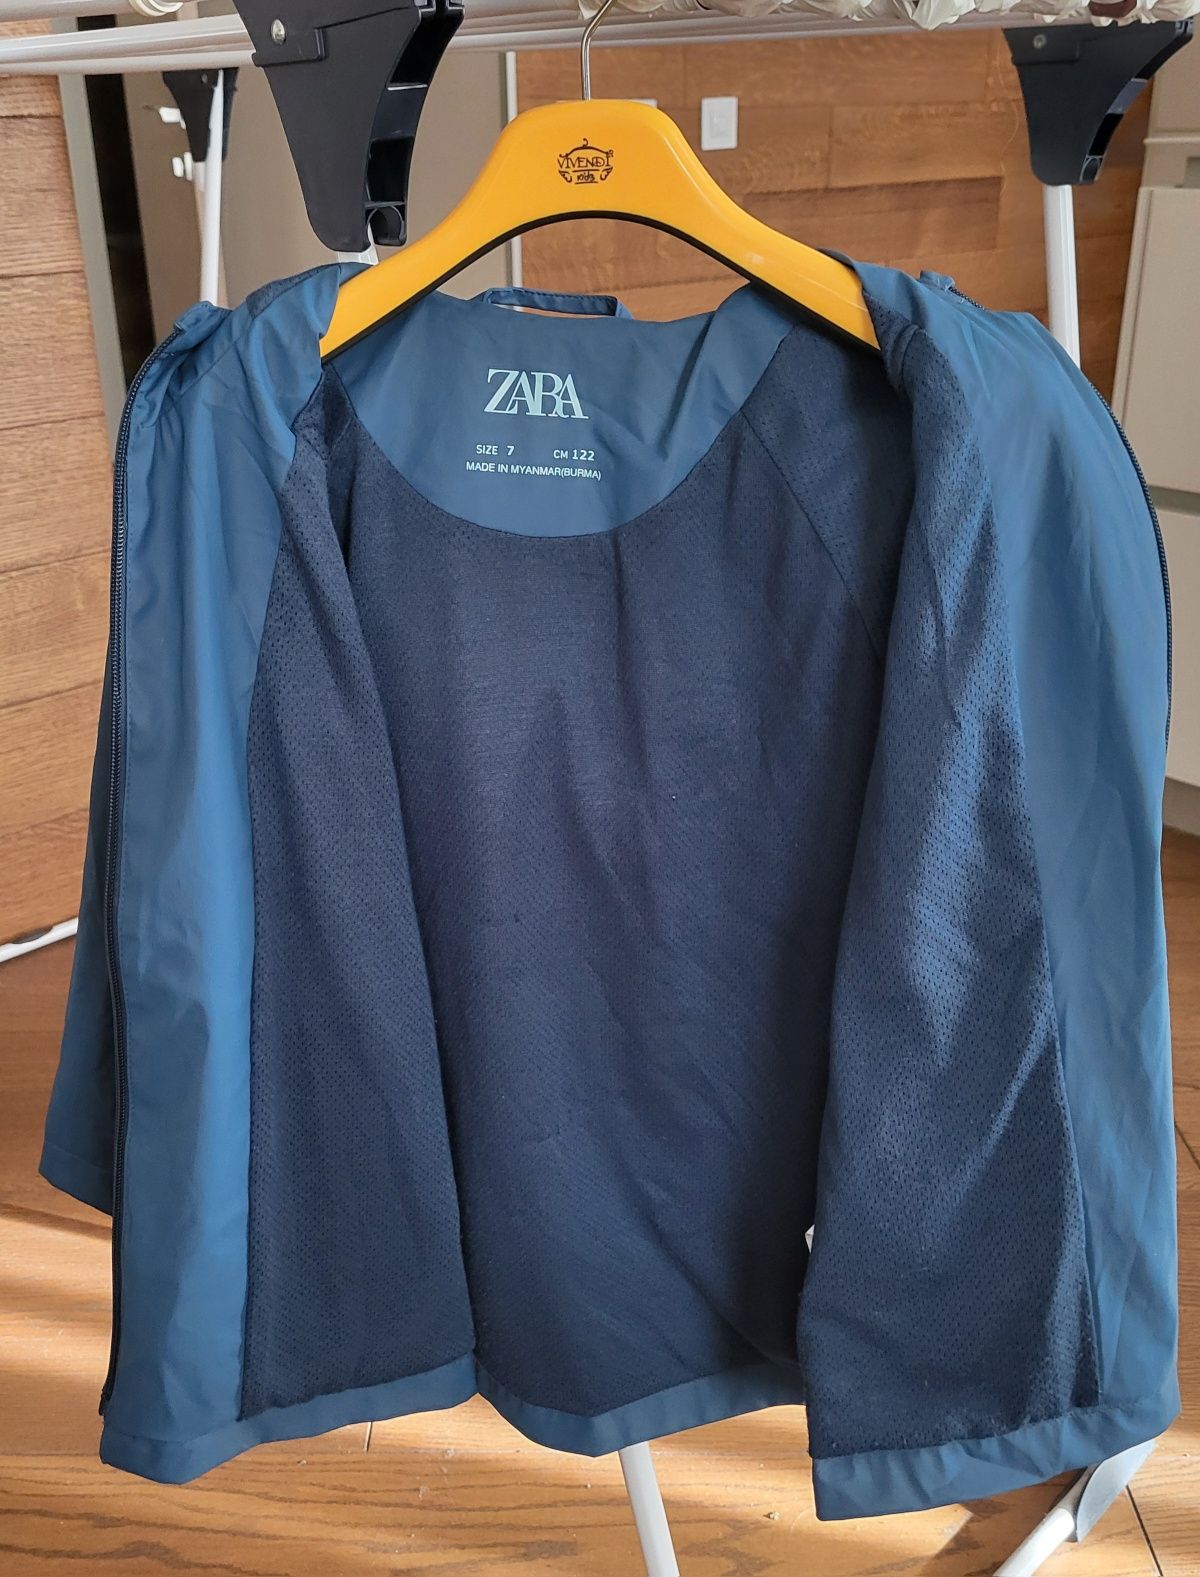 Дождевик, куртка Zara 122